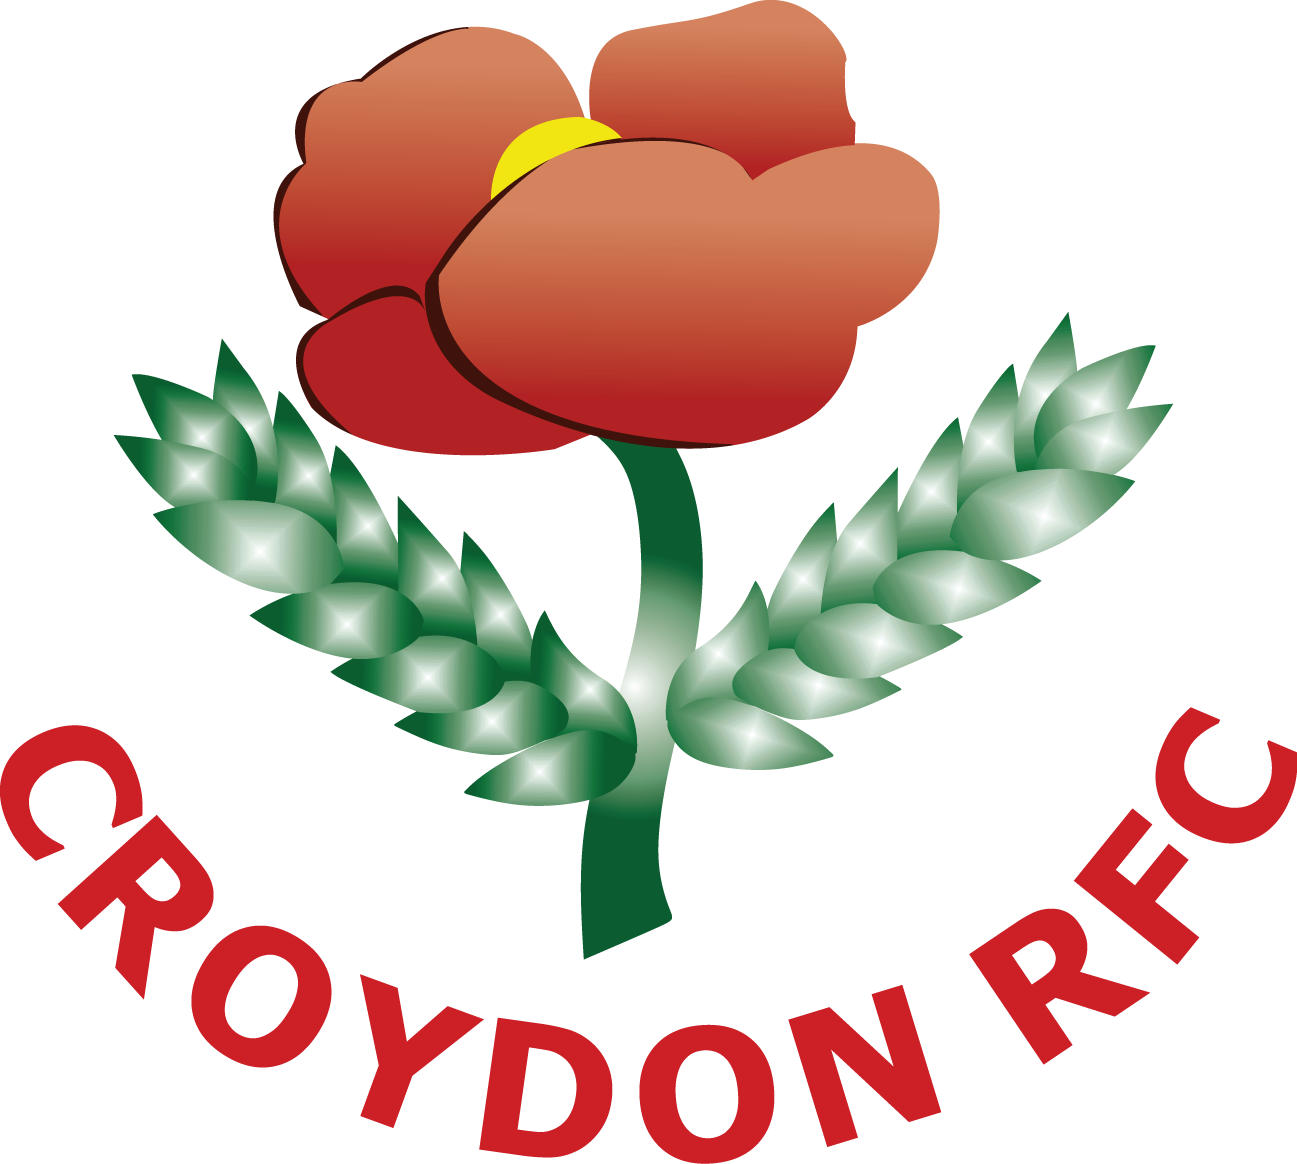 Croydon Rugby Football Club